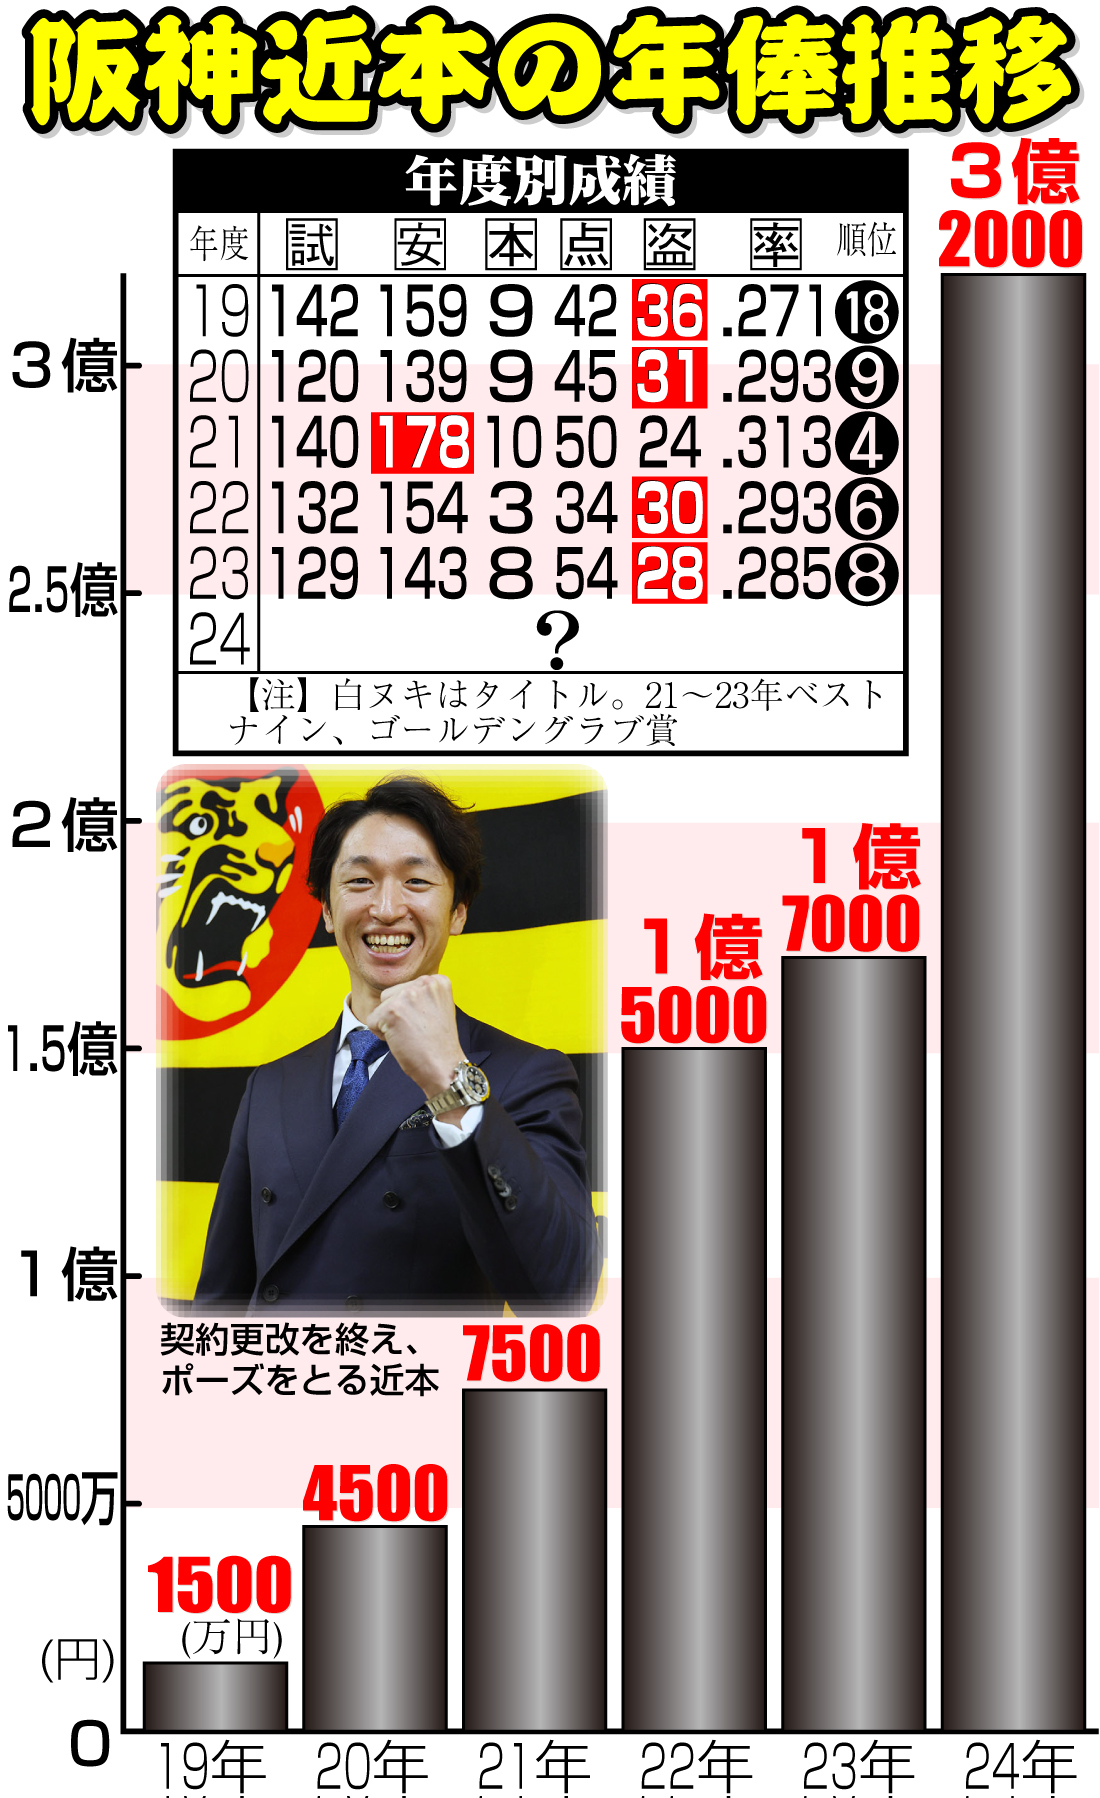 【イラスト】阪神近本の年度別成績と年俸推移